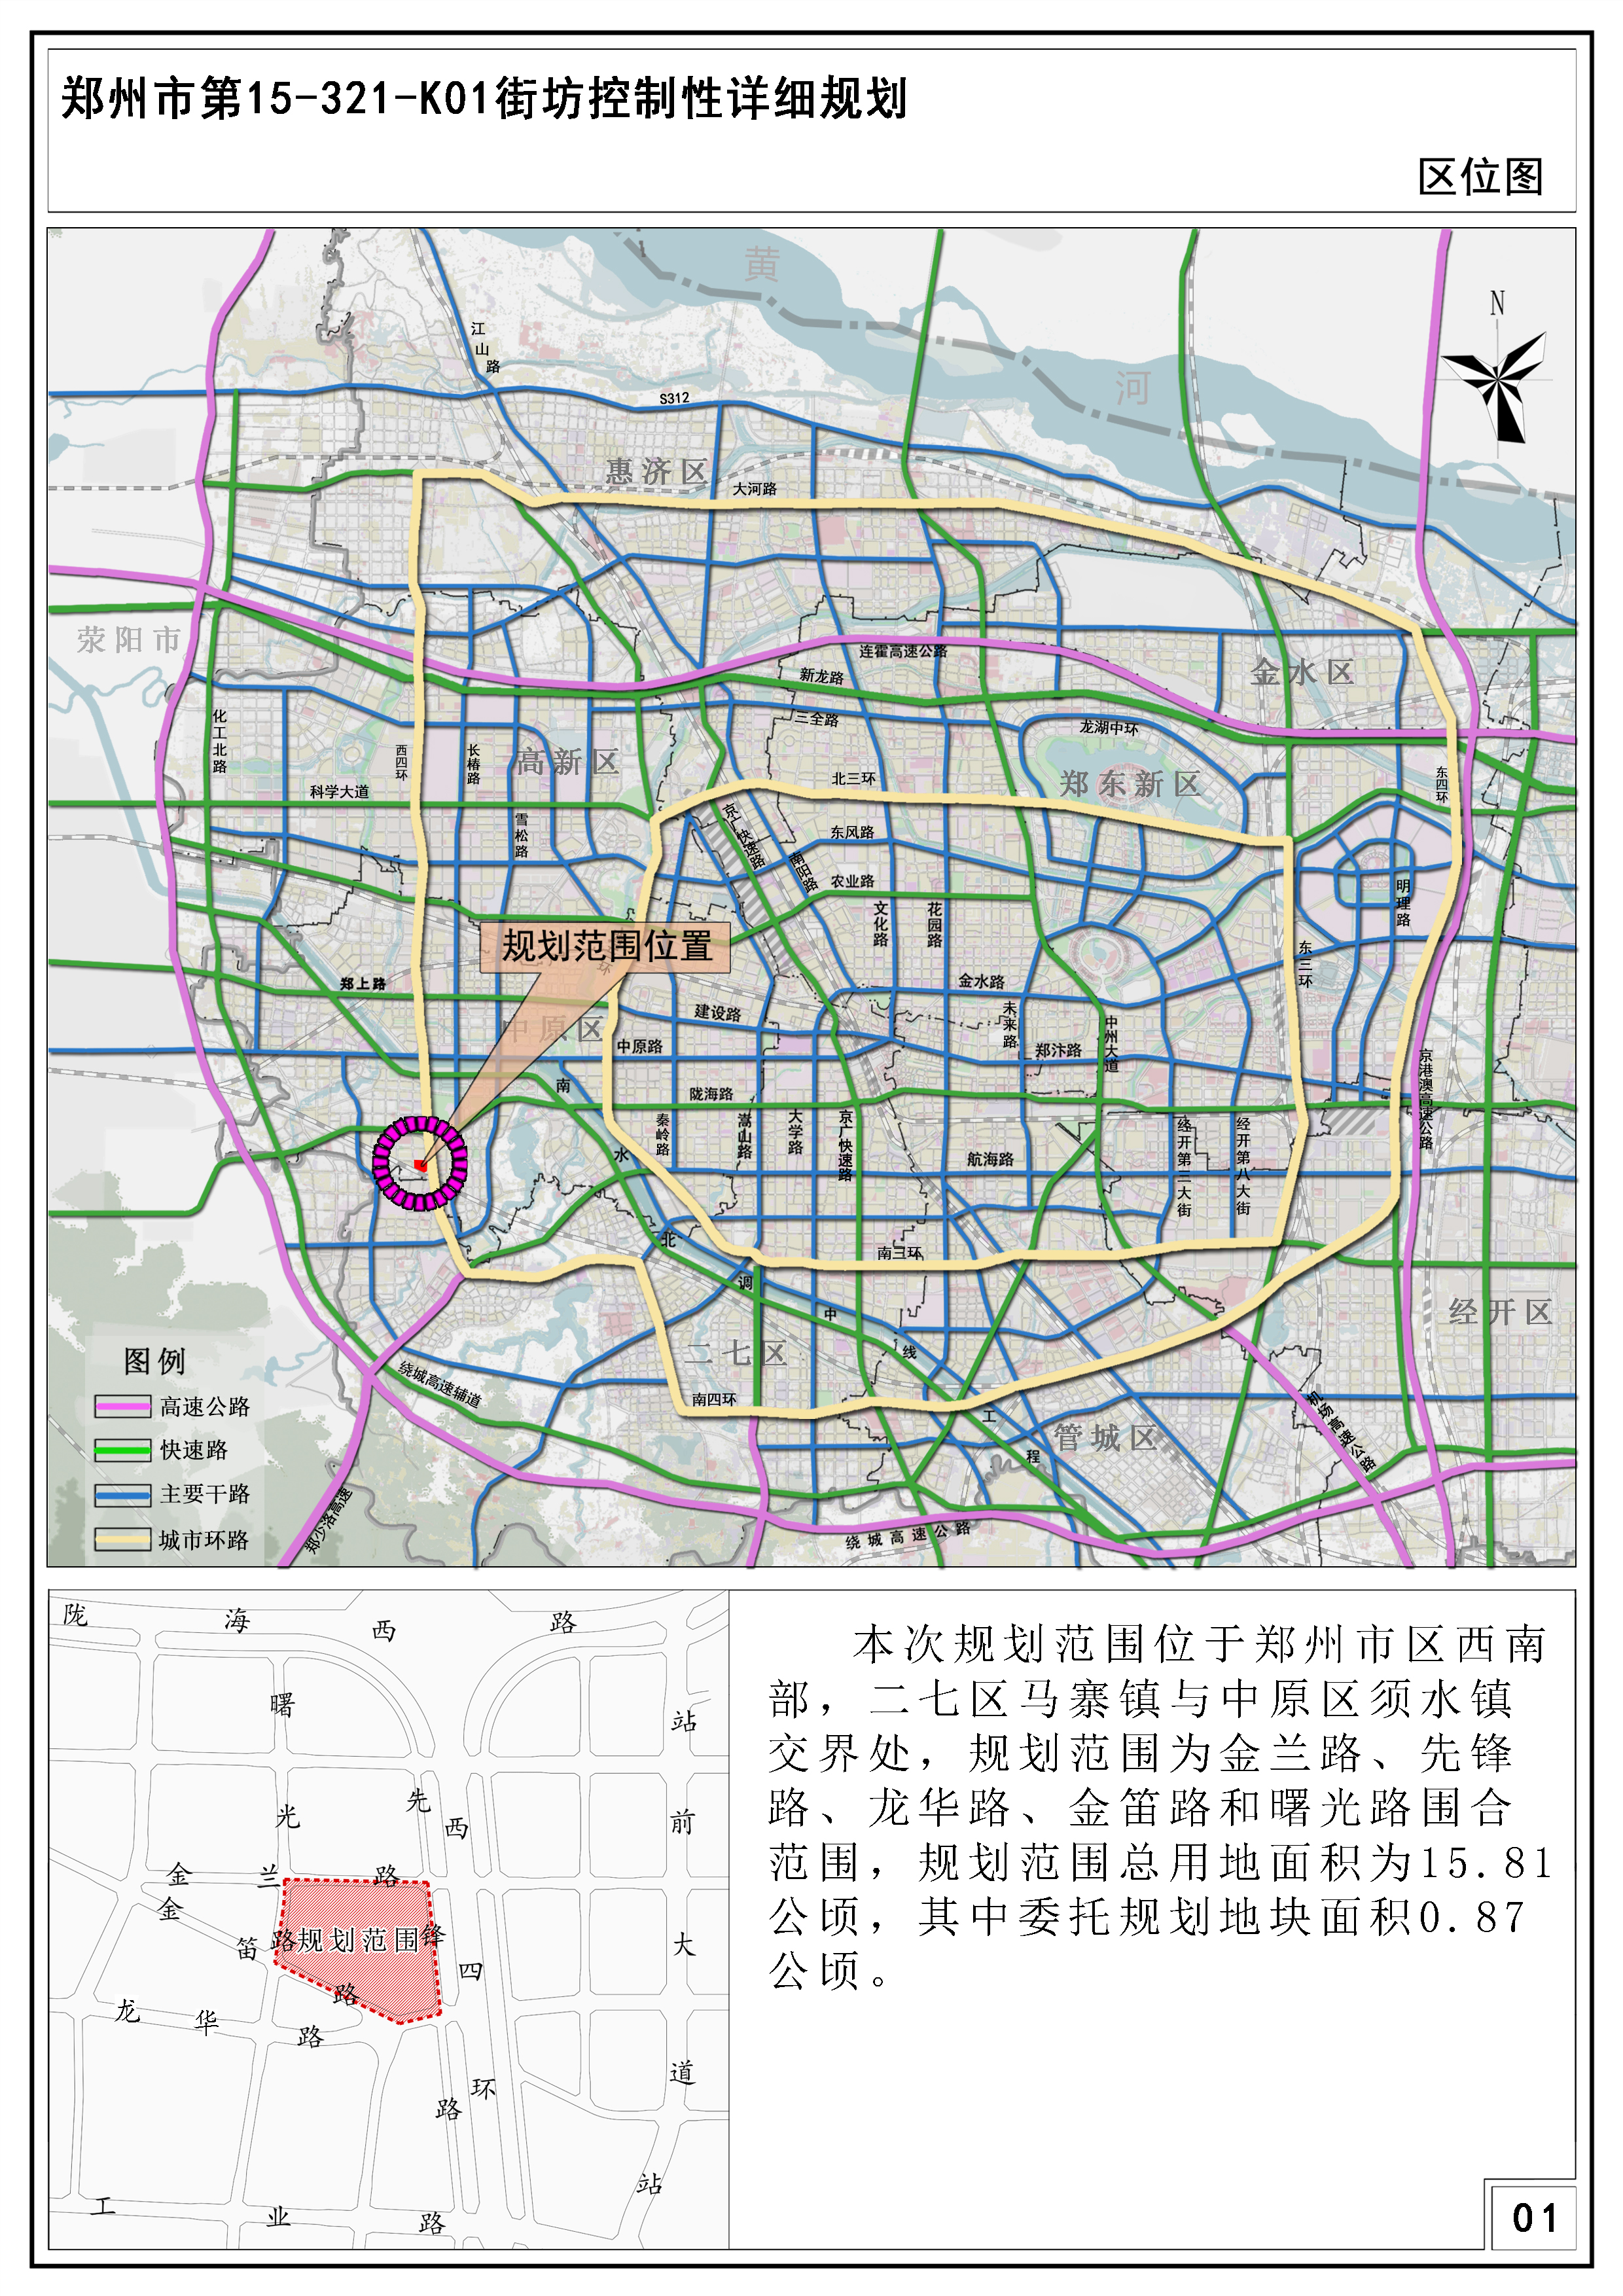 郑州市第15-321-K01街坊控制性详细规划